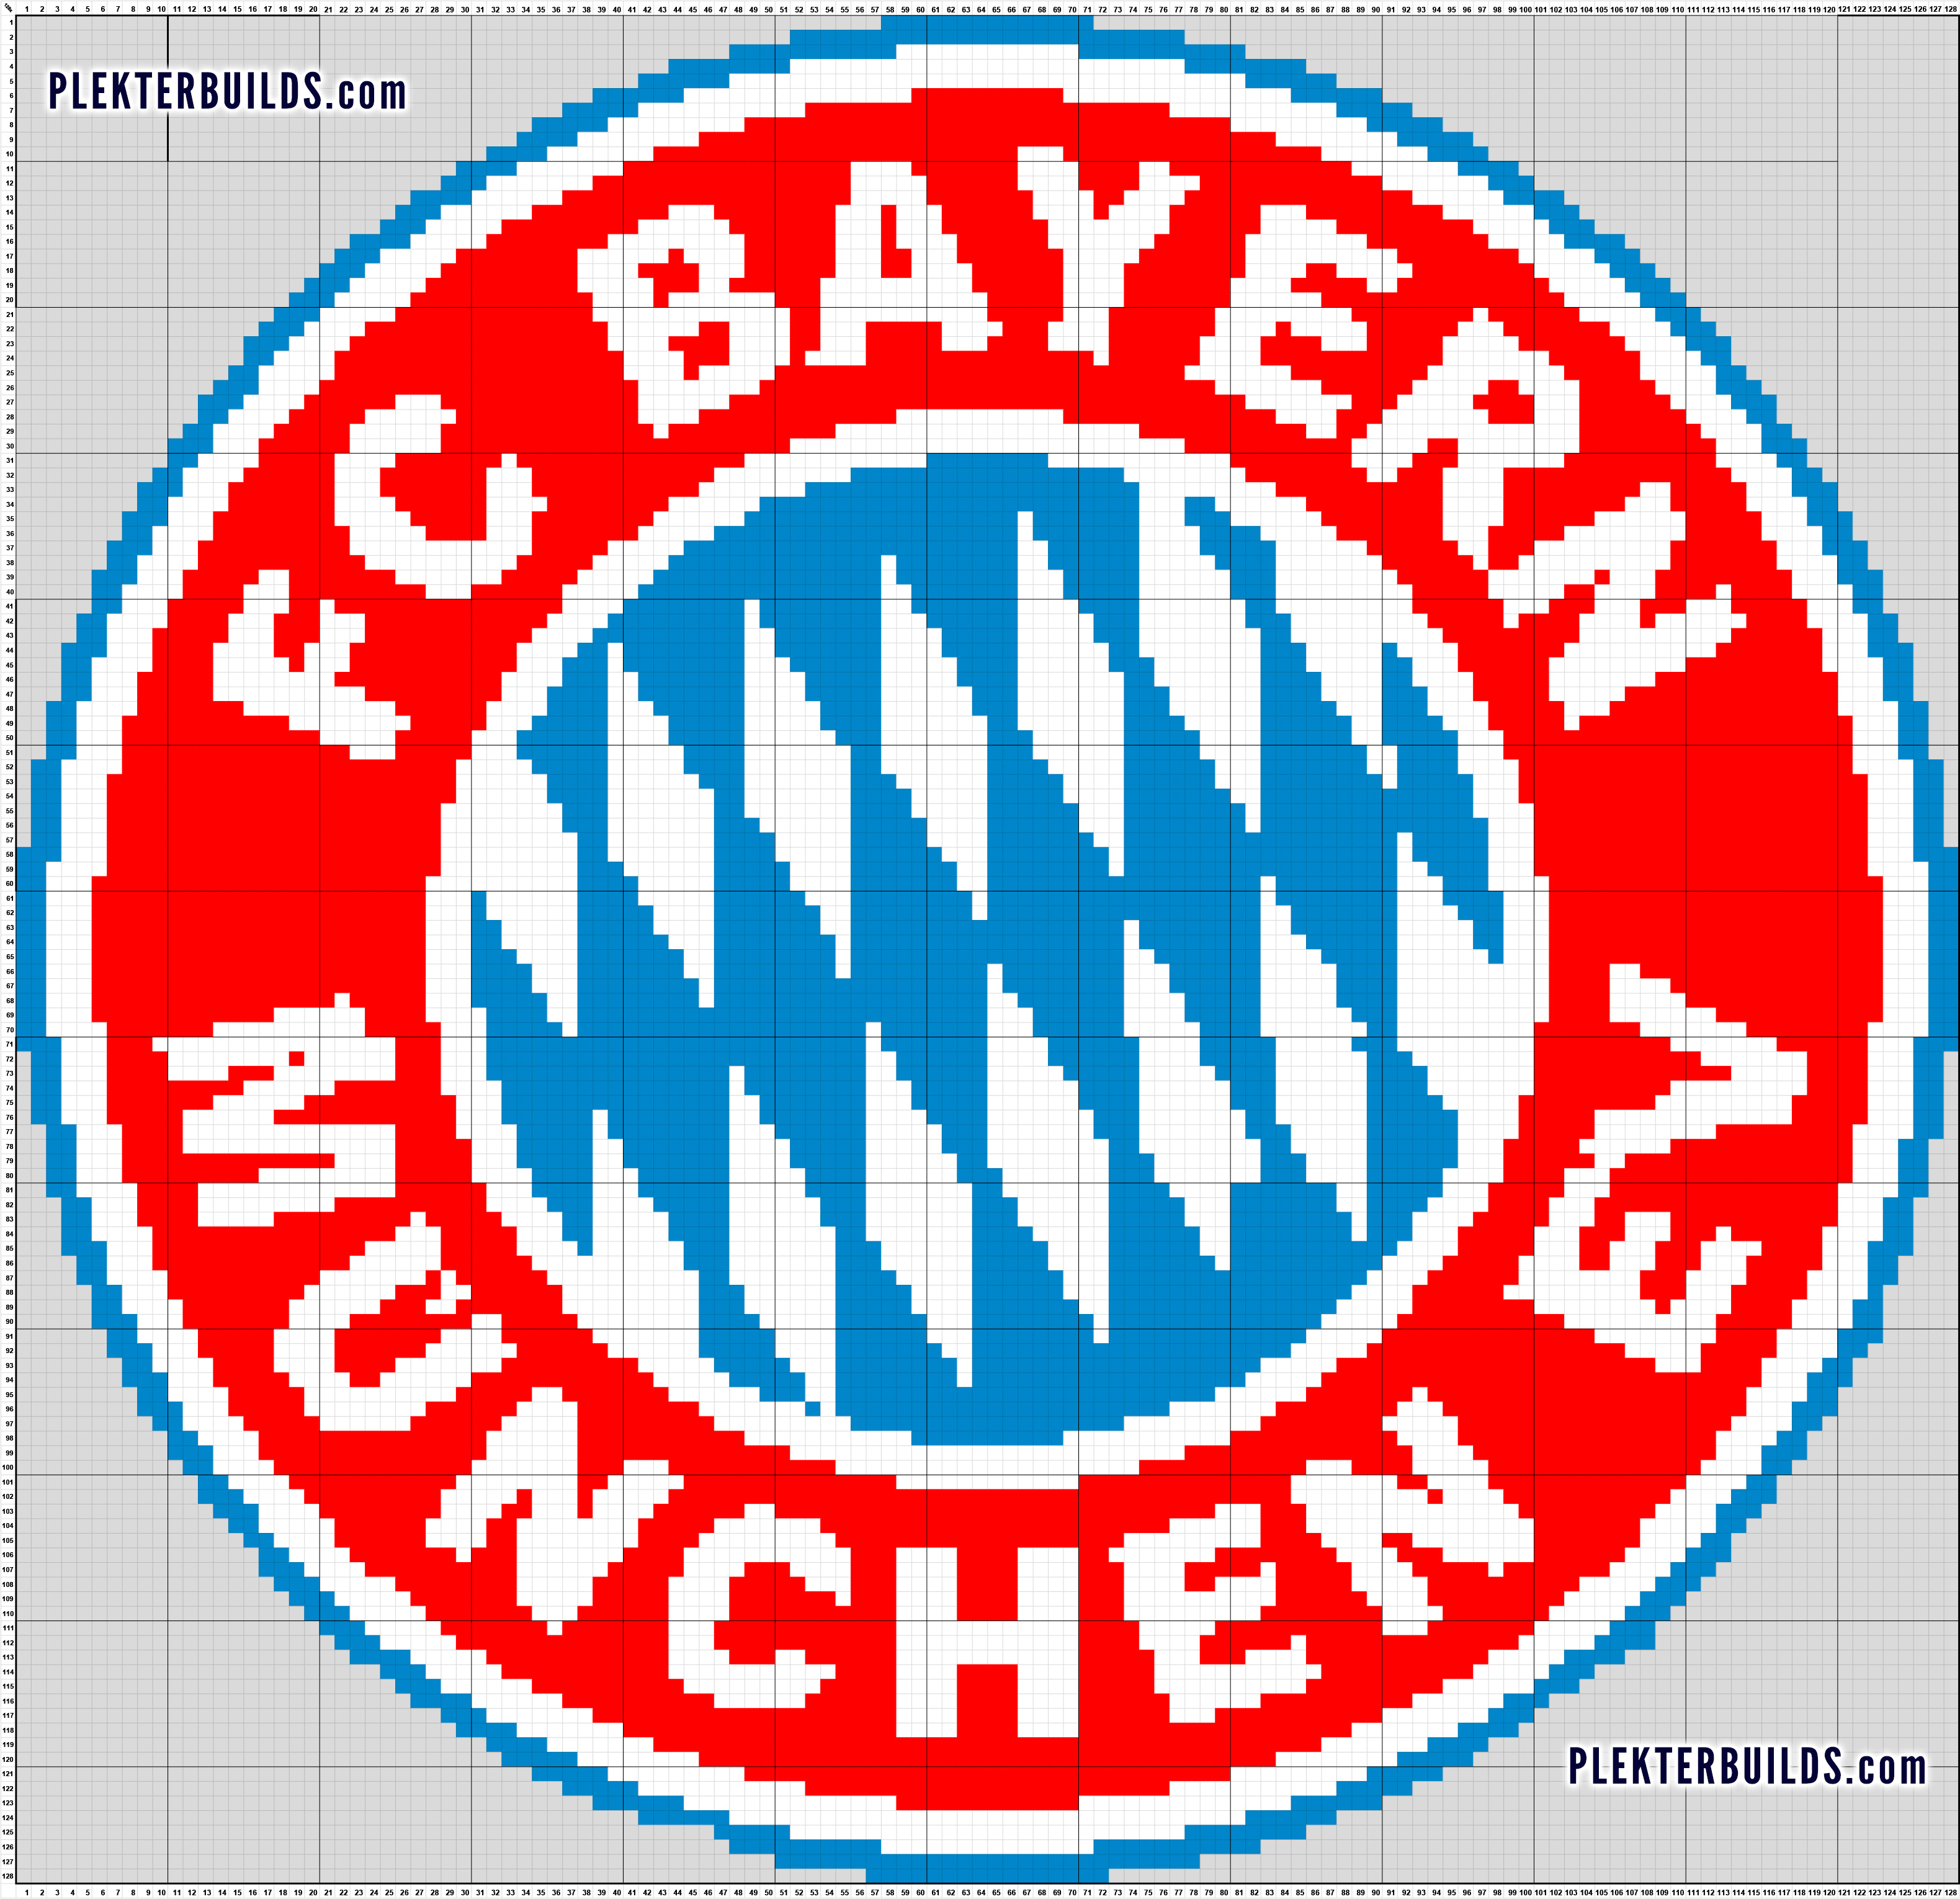 Bayern Munich München logo 128x128 pixel art Minecraft